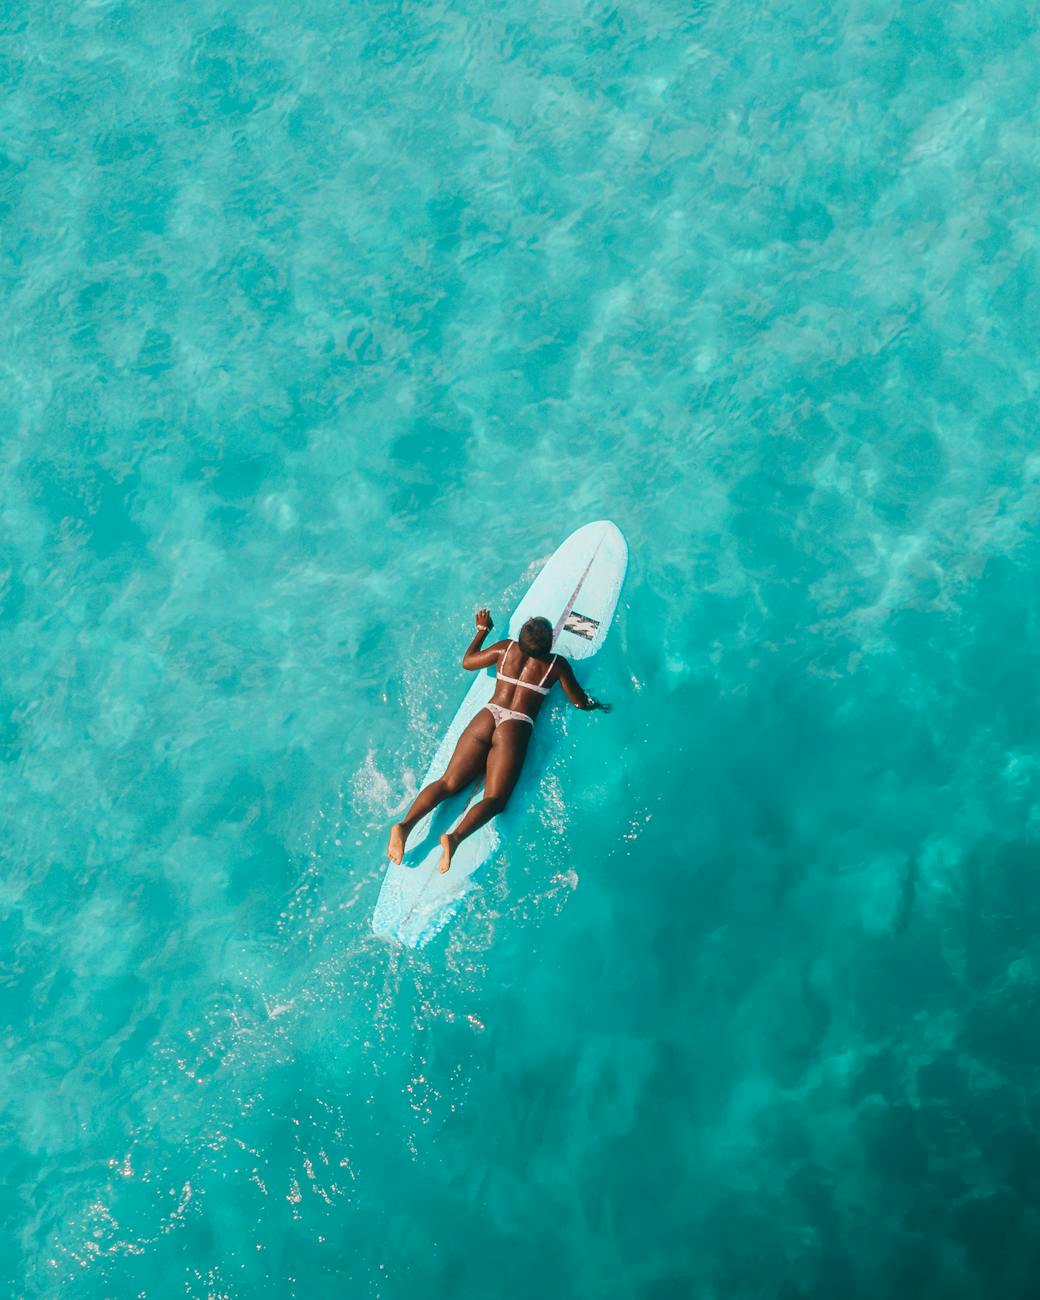 Woman in Black Bikini Holding White Surfboard in Water · Free Stock Photo